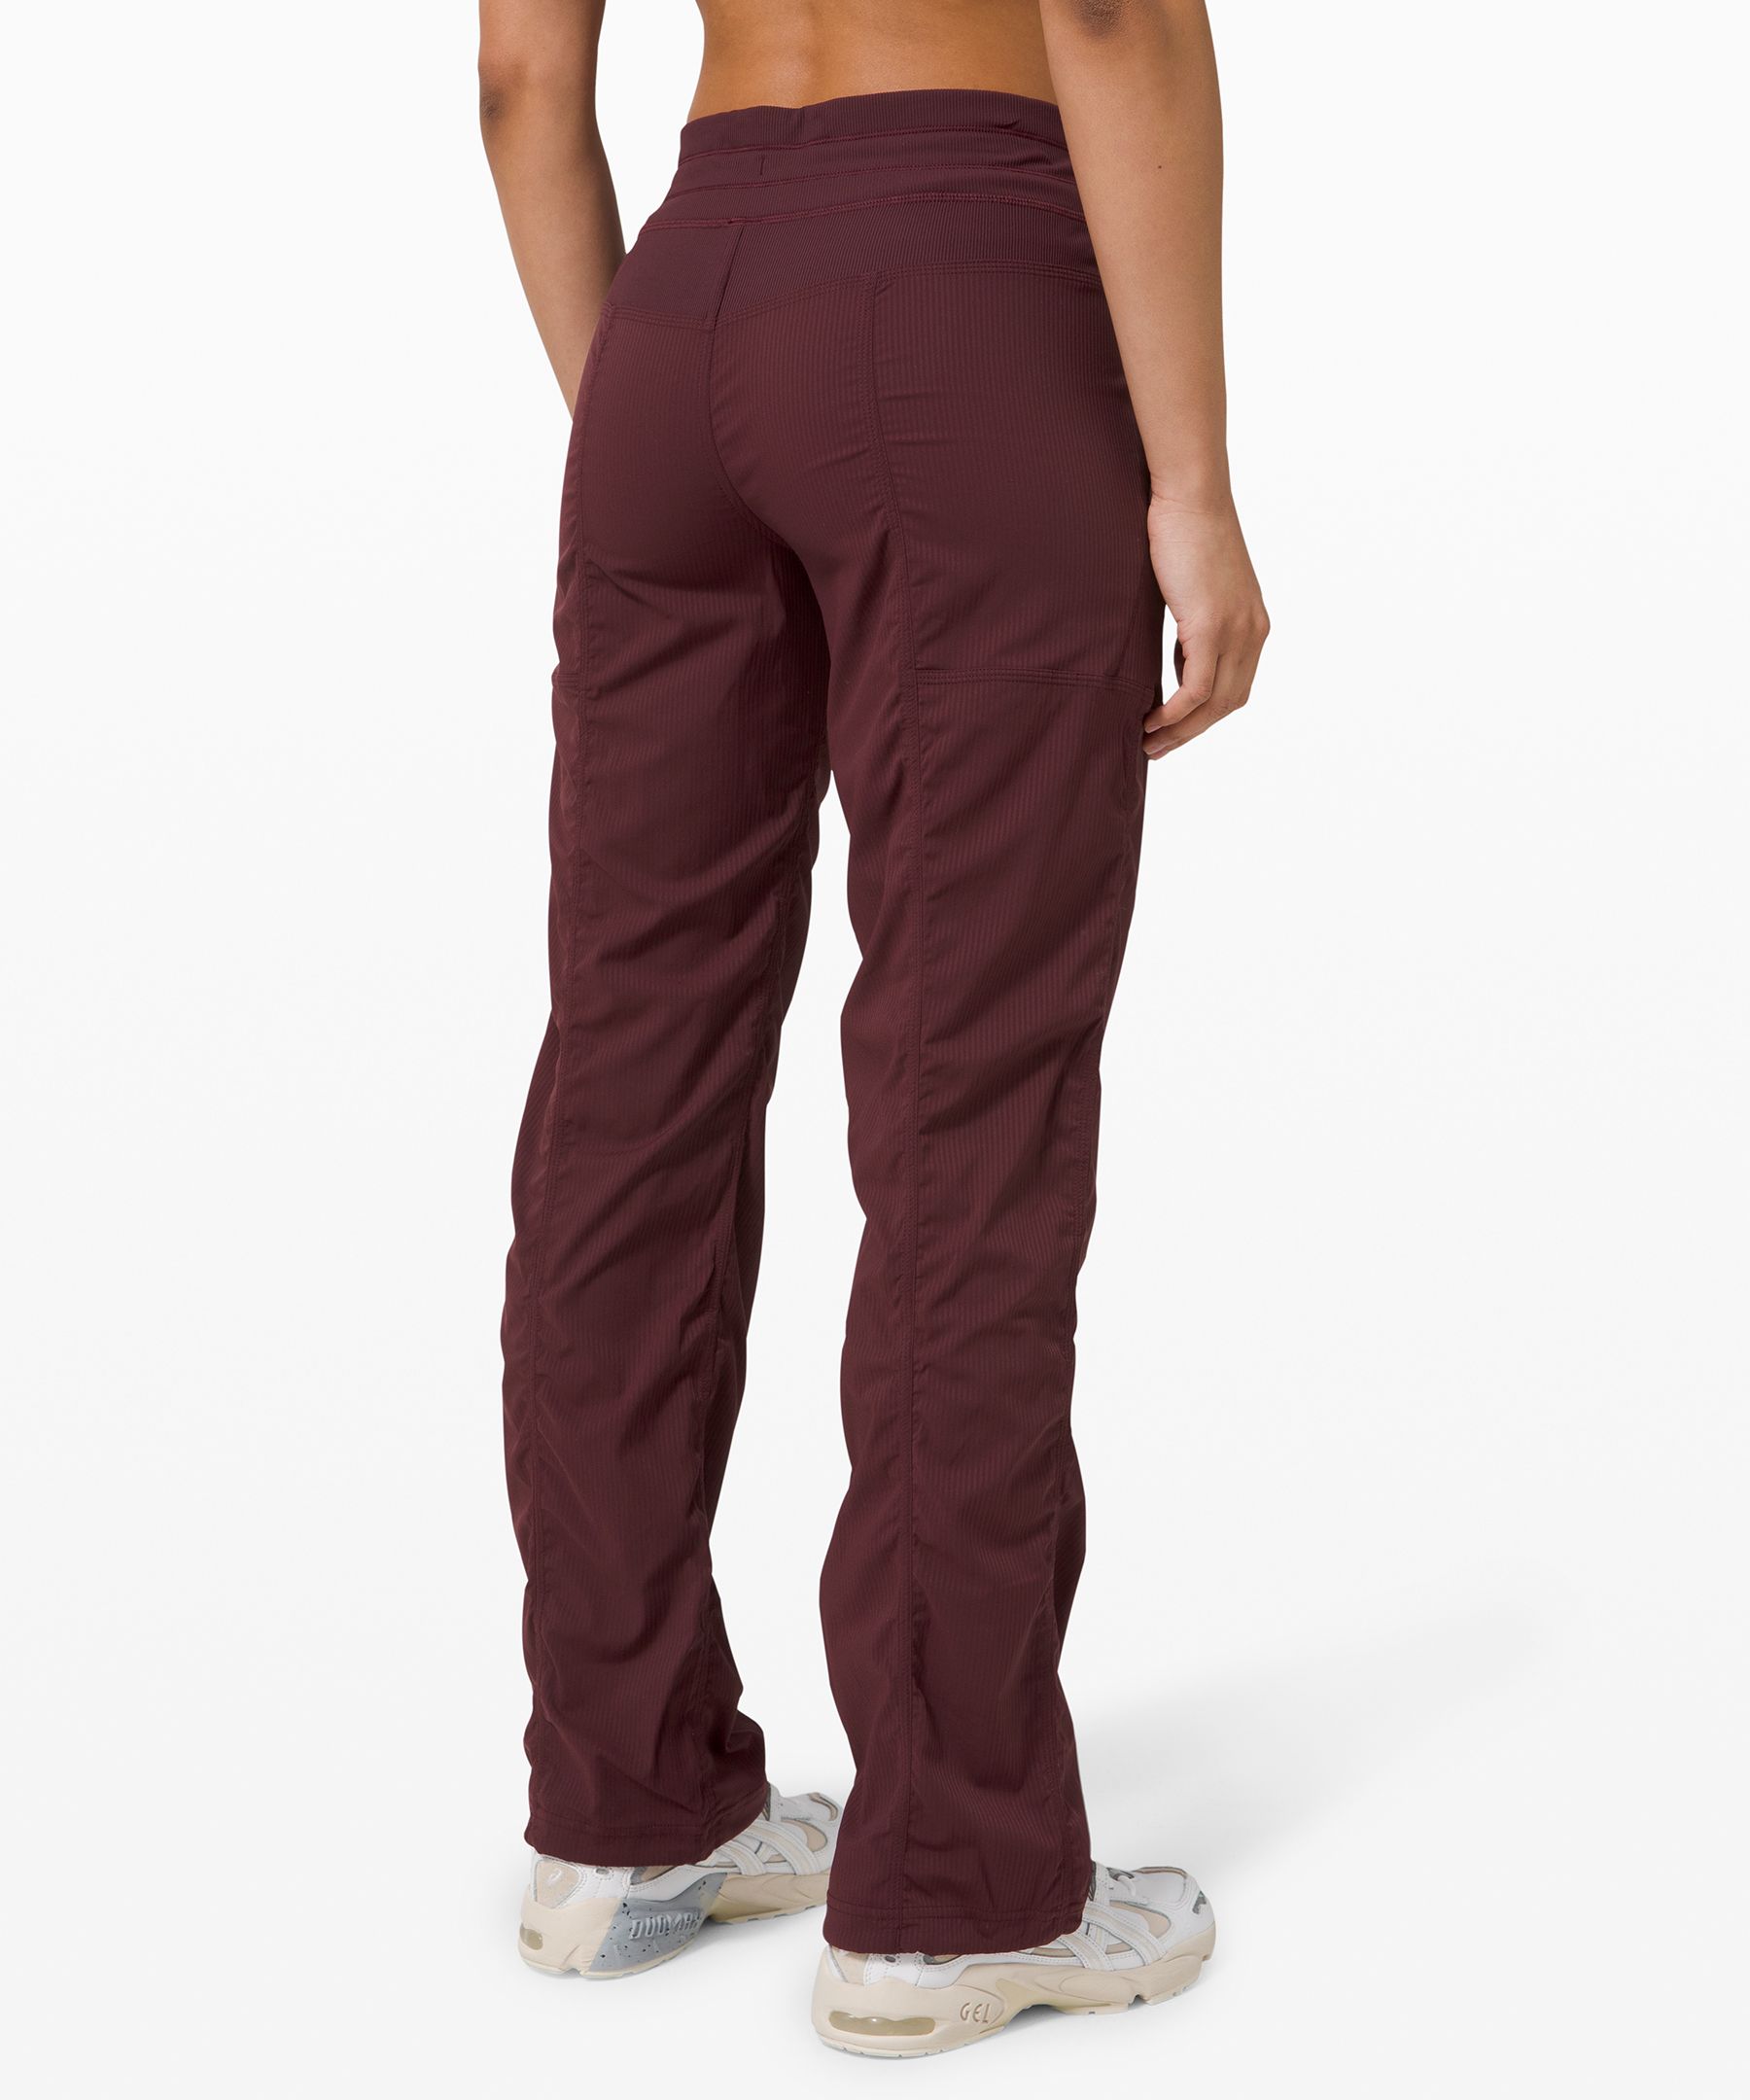 Bombshell sportswear size small “Shape leggings” in color maroon EUC